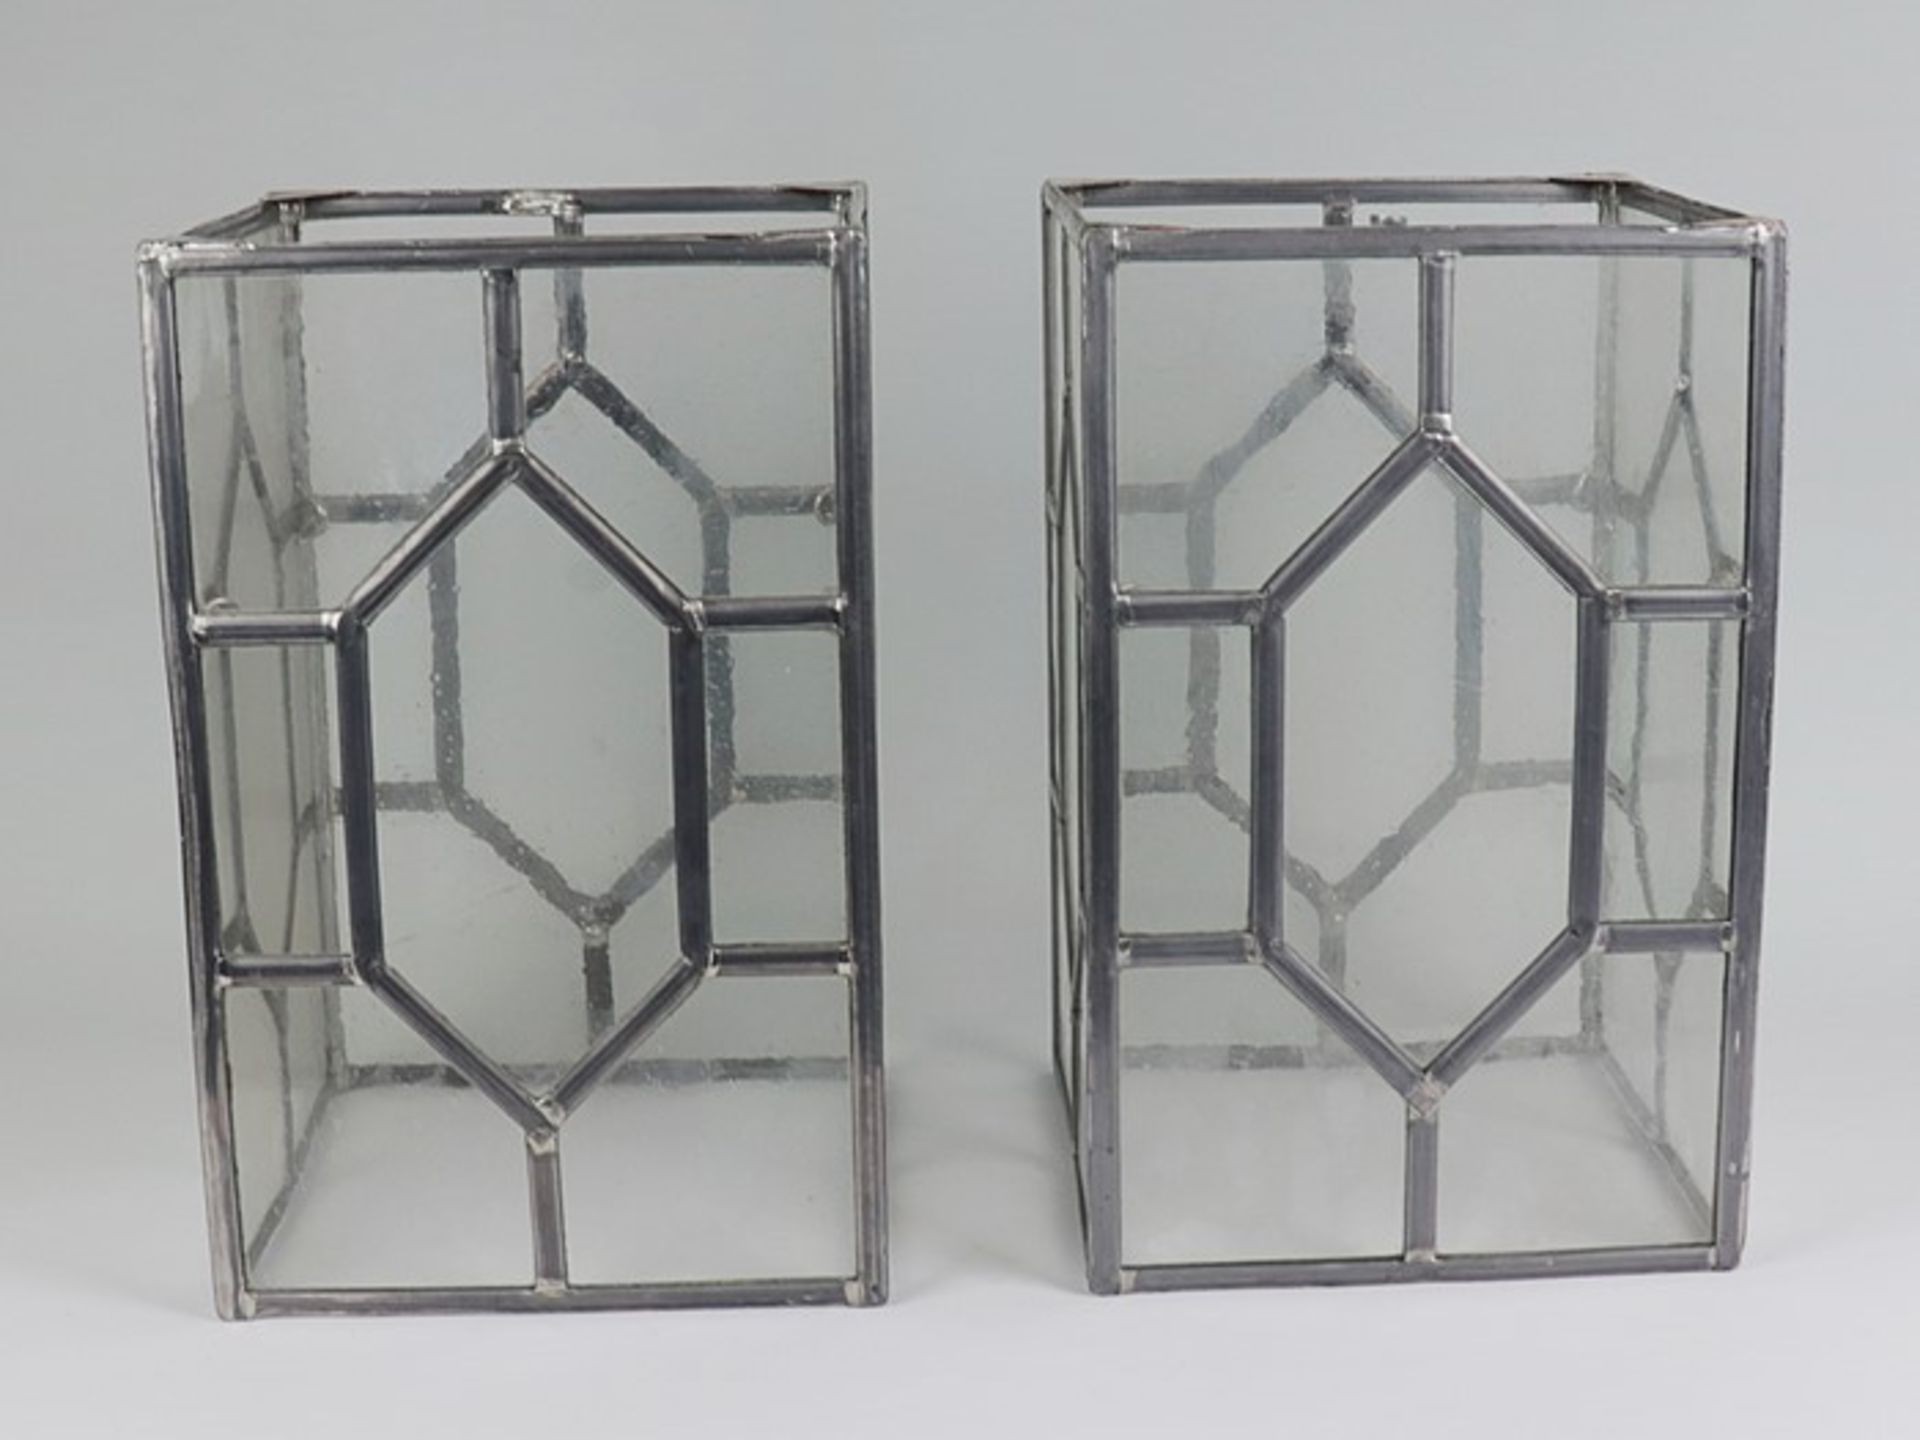 Deckenlaternen - PaarMetall/Glas, bleiverglaster Korpus, Blaseneinschlüsse, rechteckige Form, - Image 2 of 2